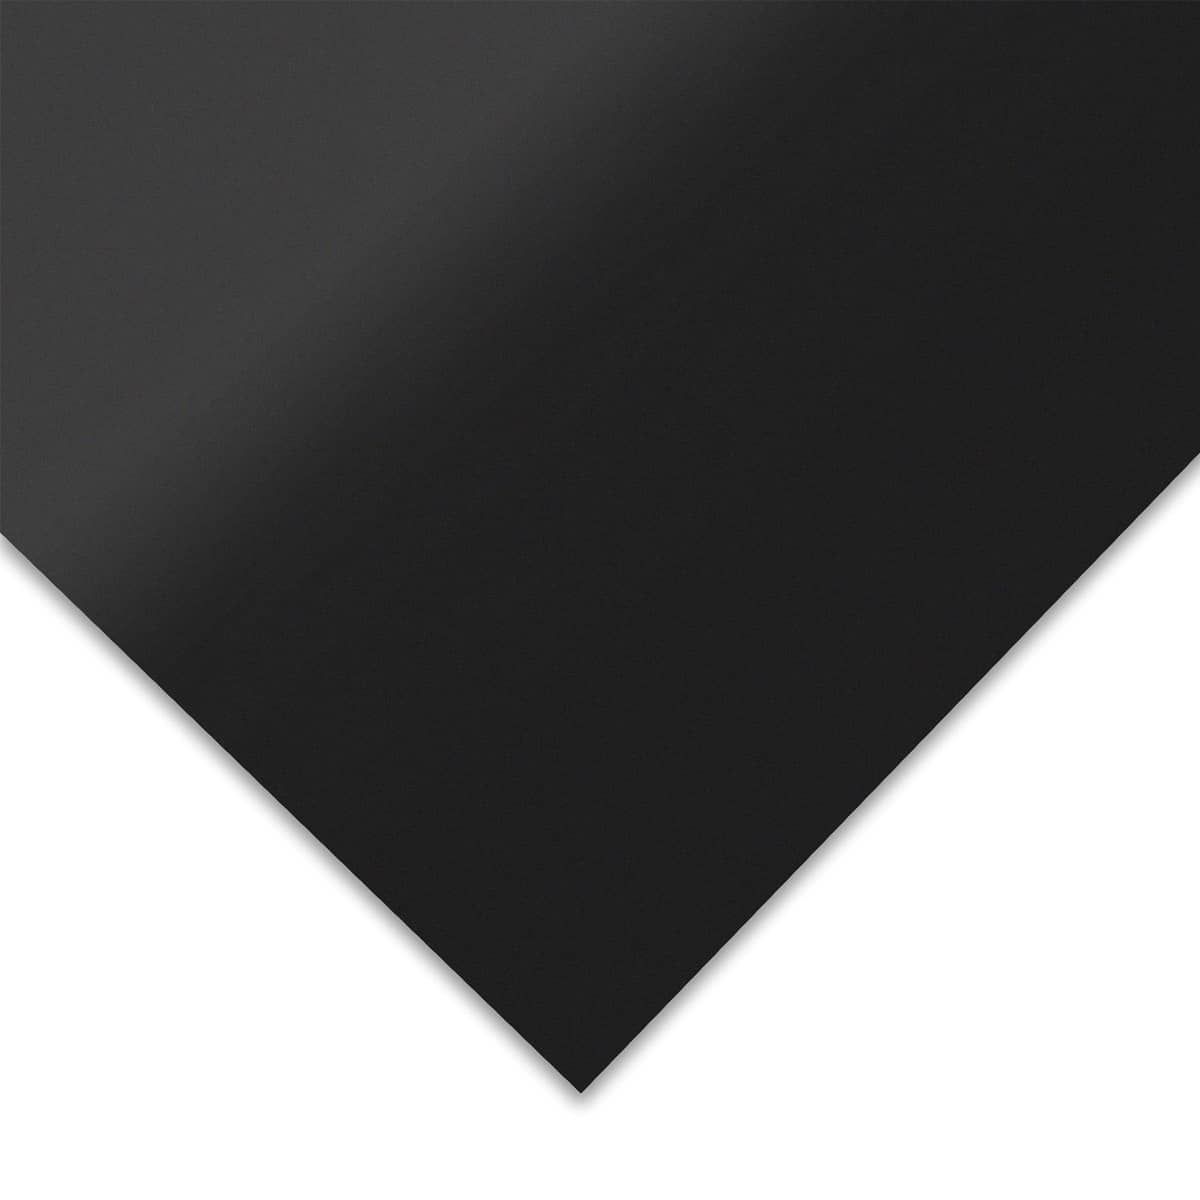 Grafix Dura-Bright Pad Opaque Black 5x7 (12 Sheets) 0.01 thick